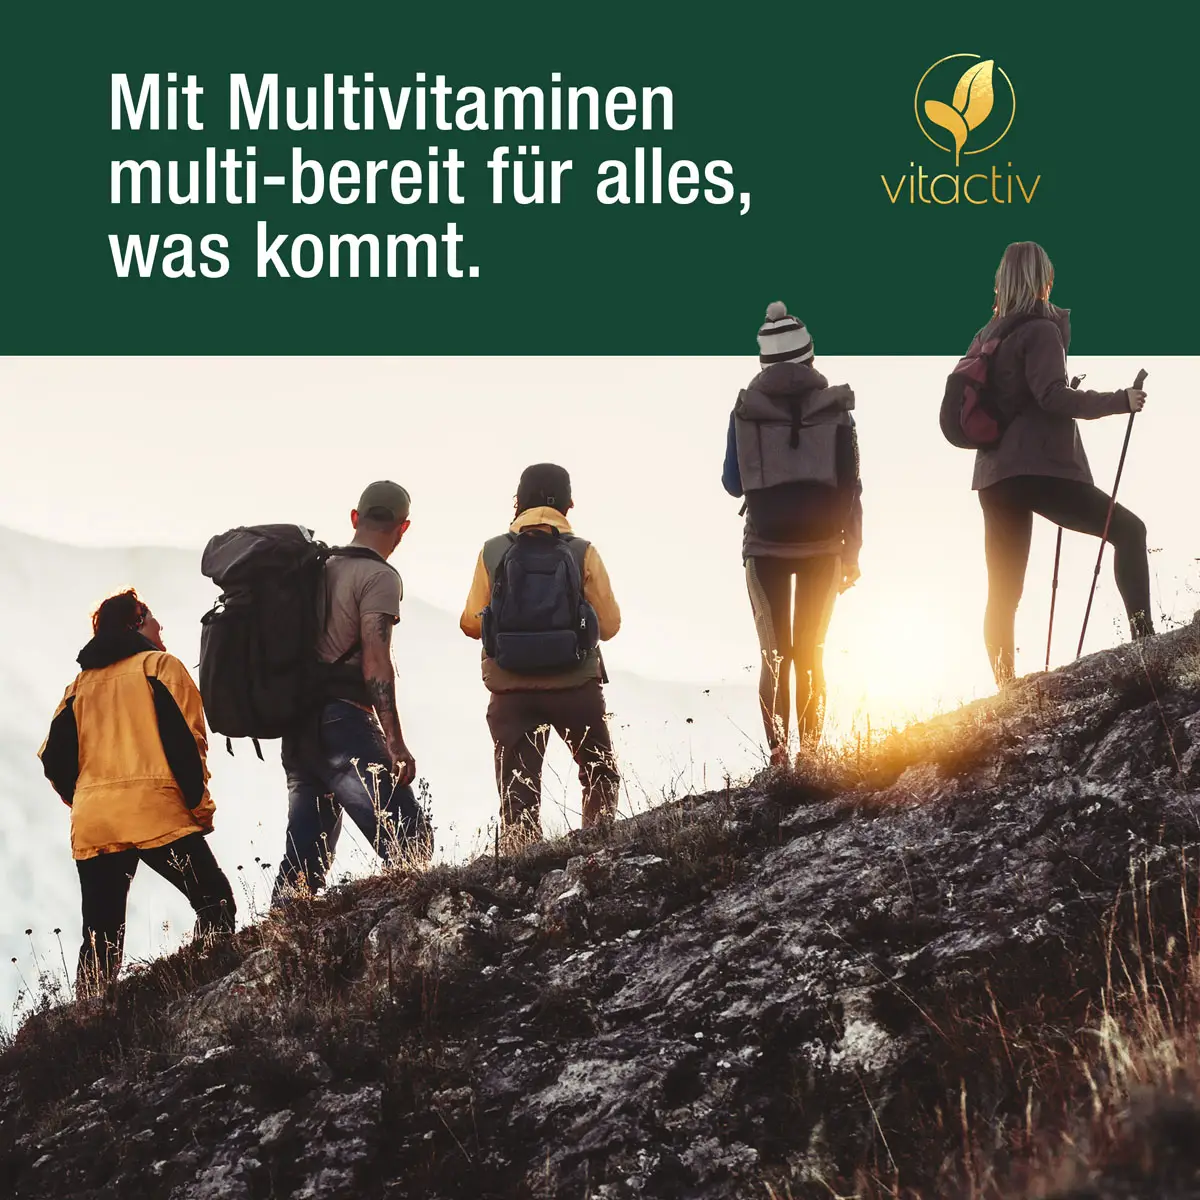 Multivitamine für alle Menschen. Das Bild zeigt eine gemischte Gruppe von Personen, die einen Berg erklimmen.